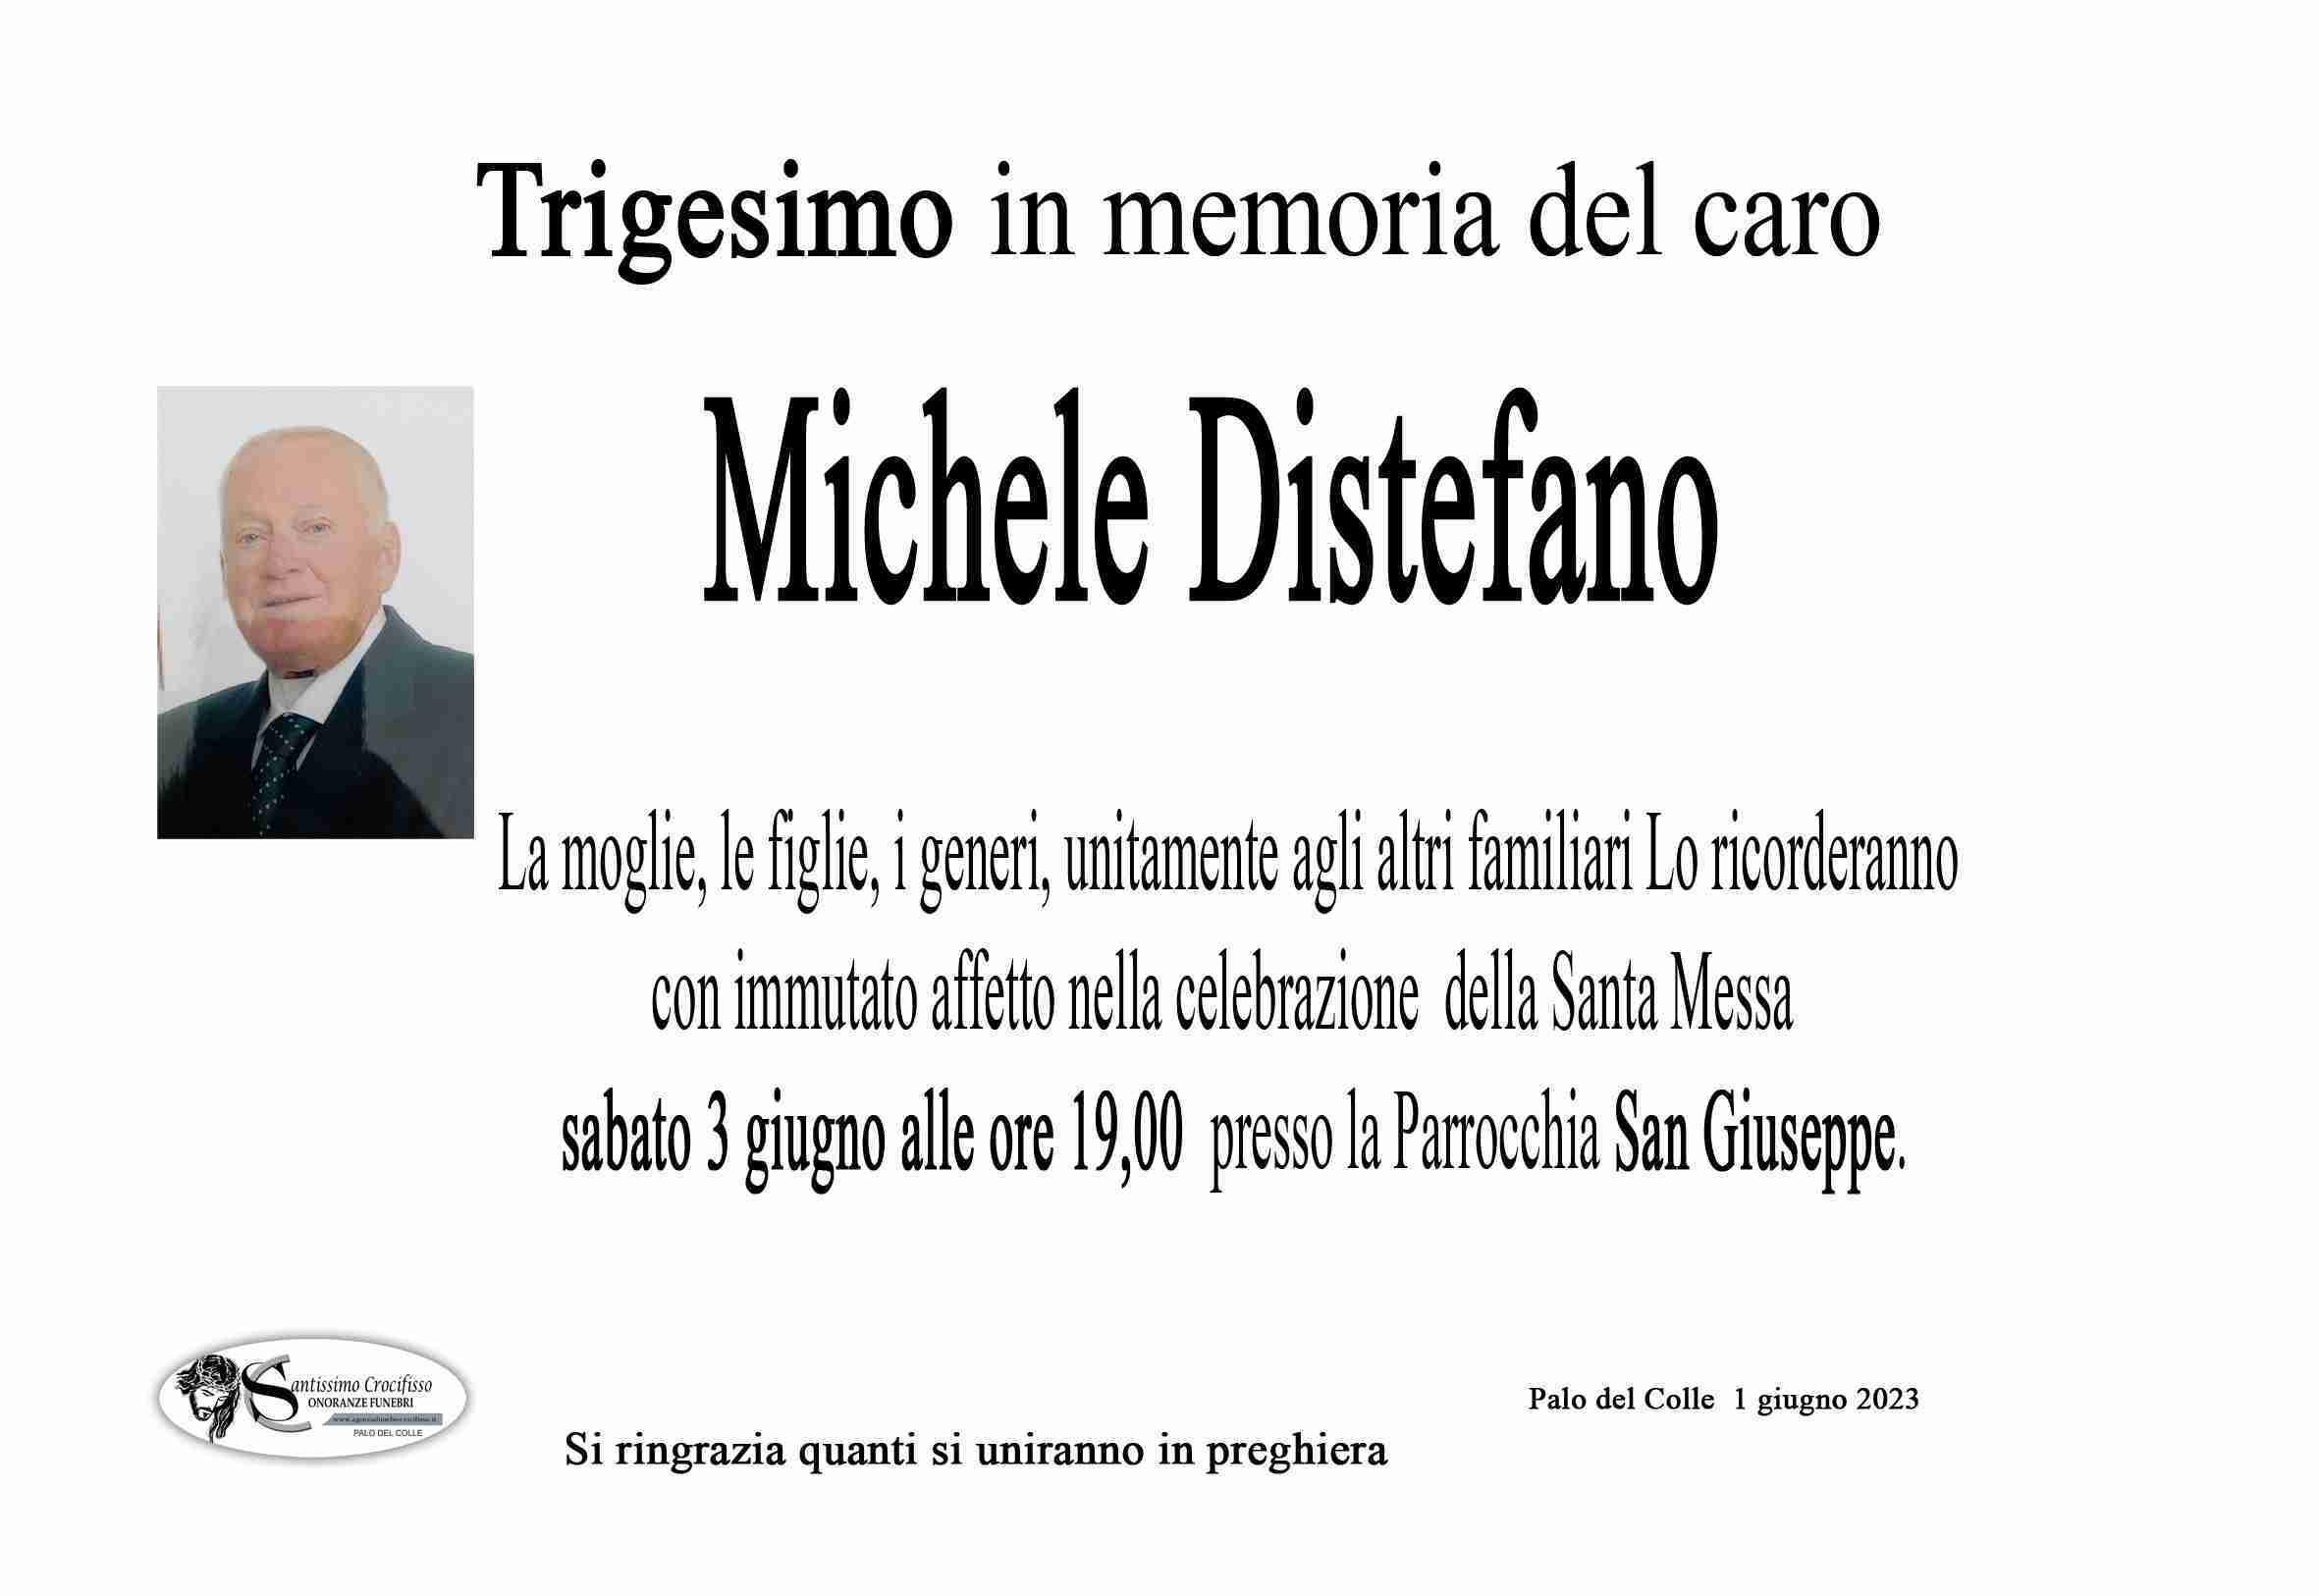 Michele Distefano